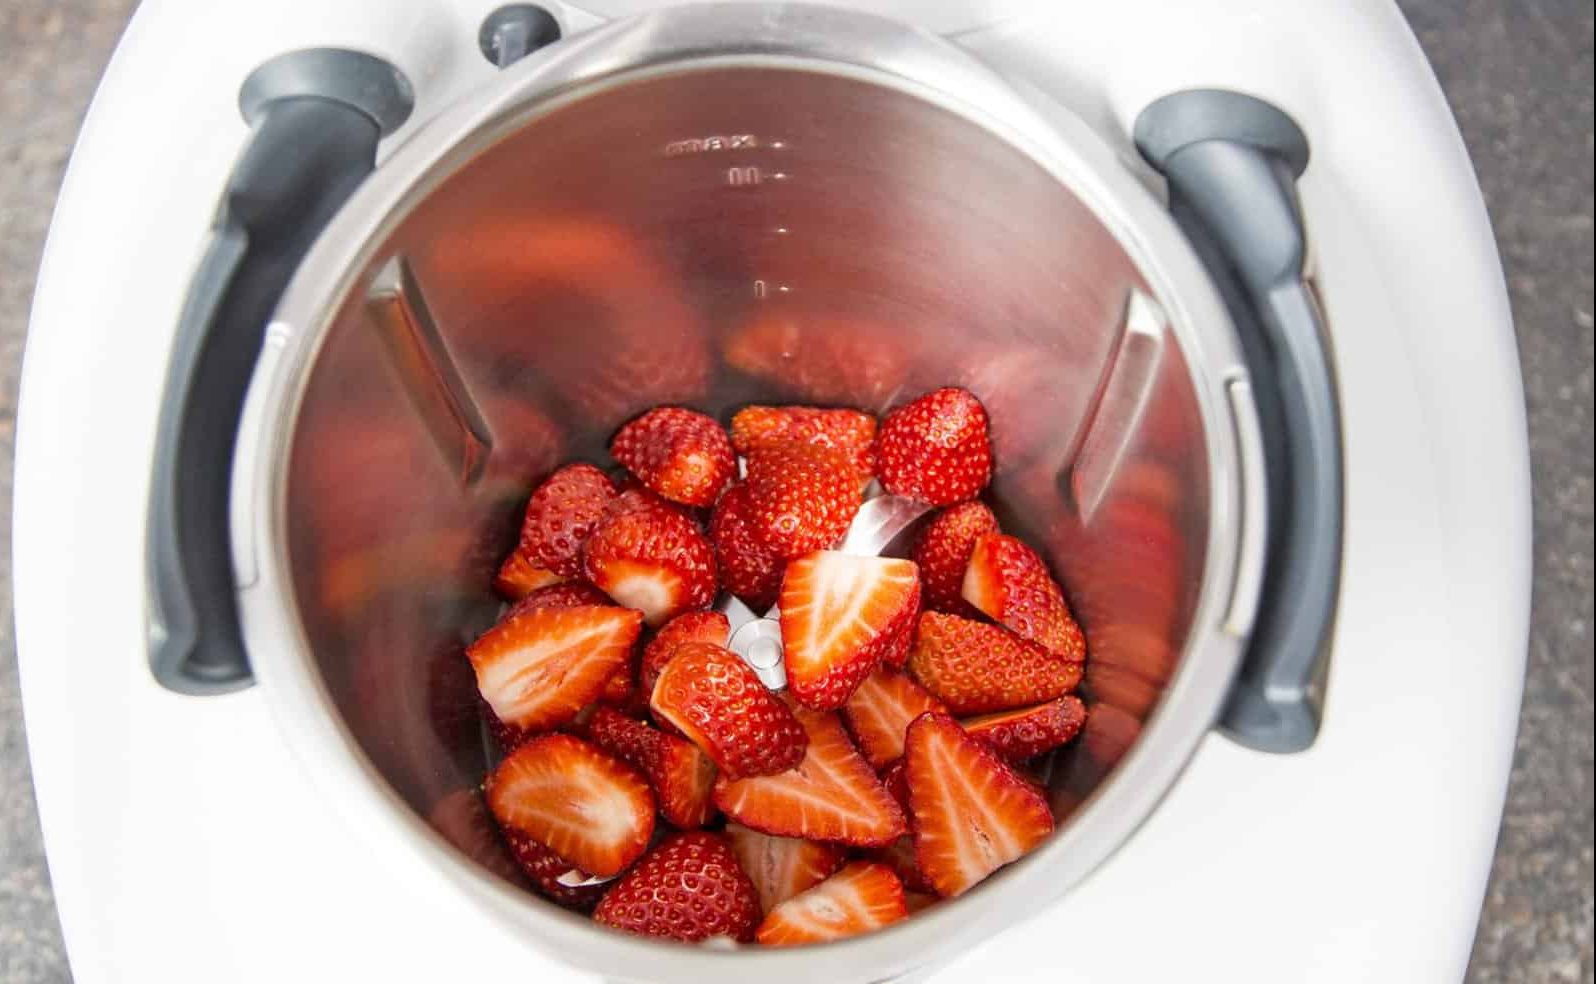 Erdbeermarmelade mit dem Thermomix® – Foto: Anna Gieseler